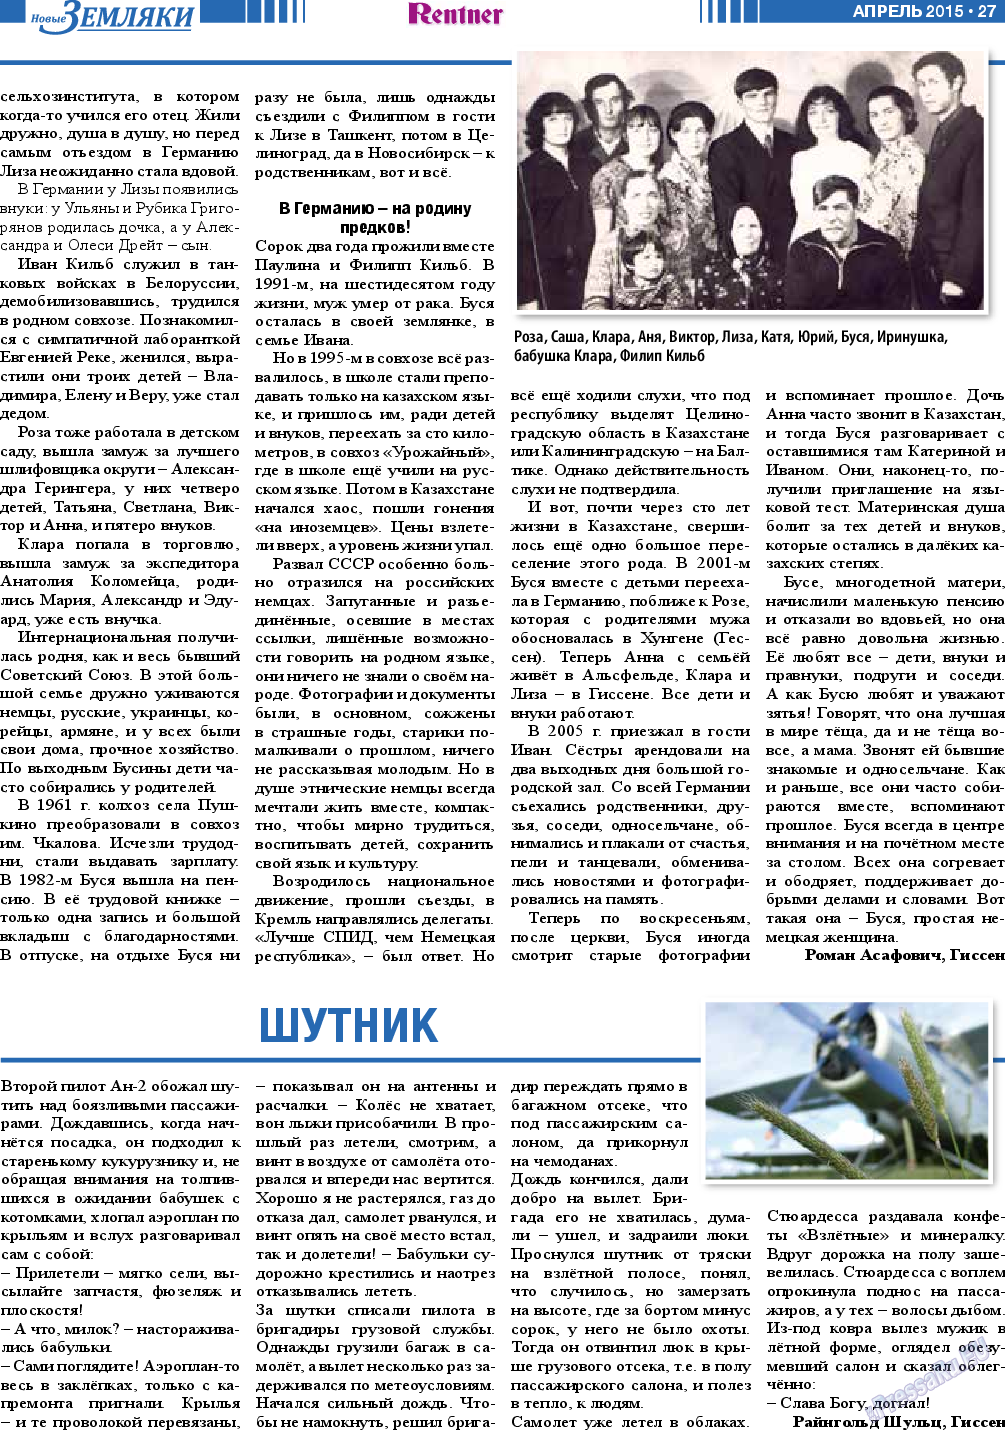 Новые Земляки, газета. 2015 №4 стр.27